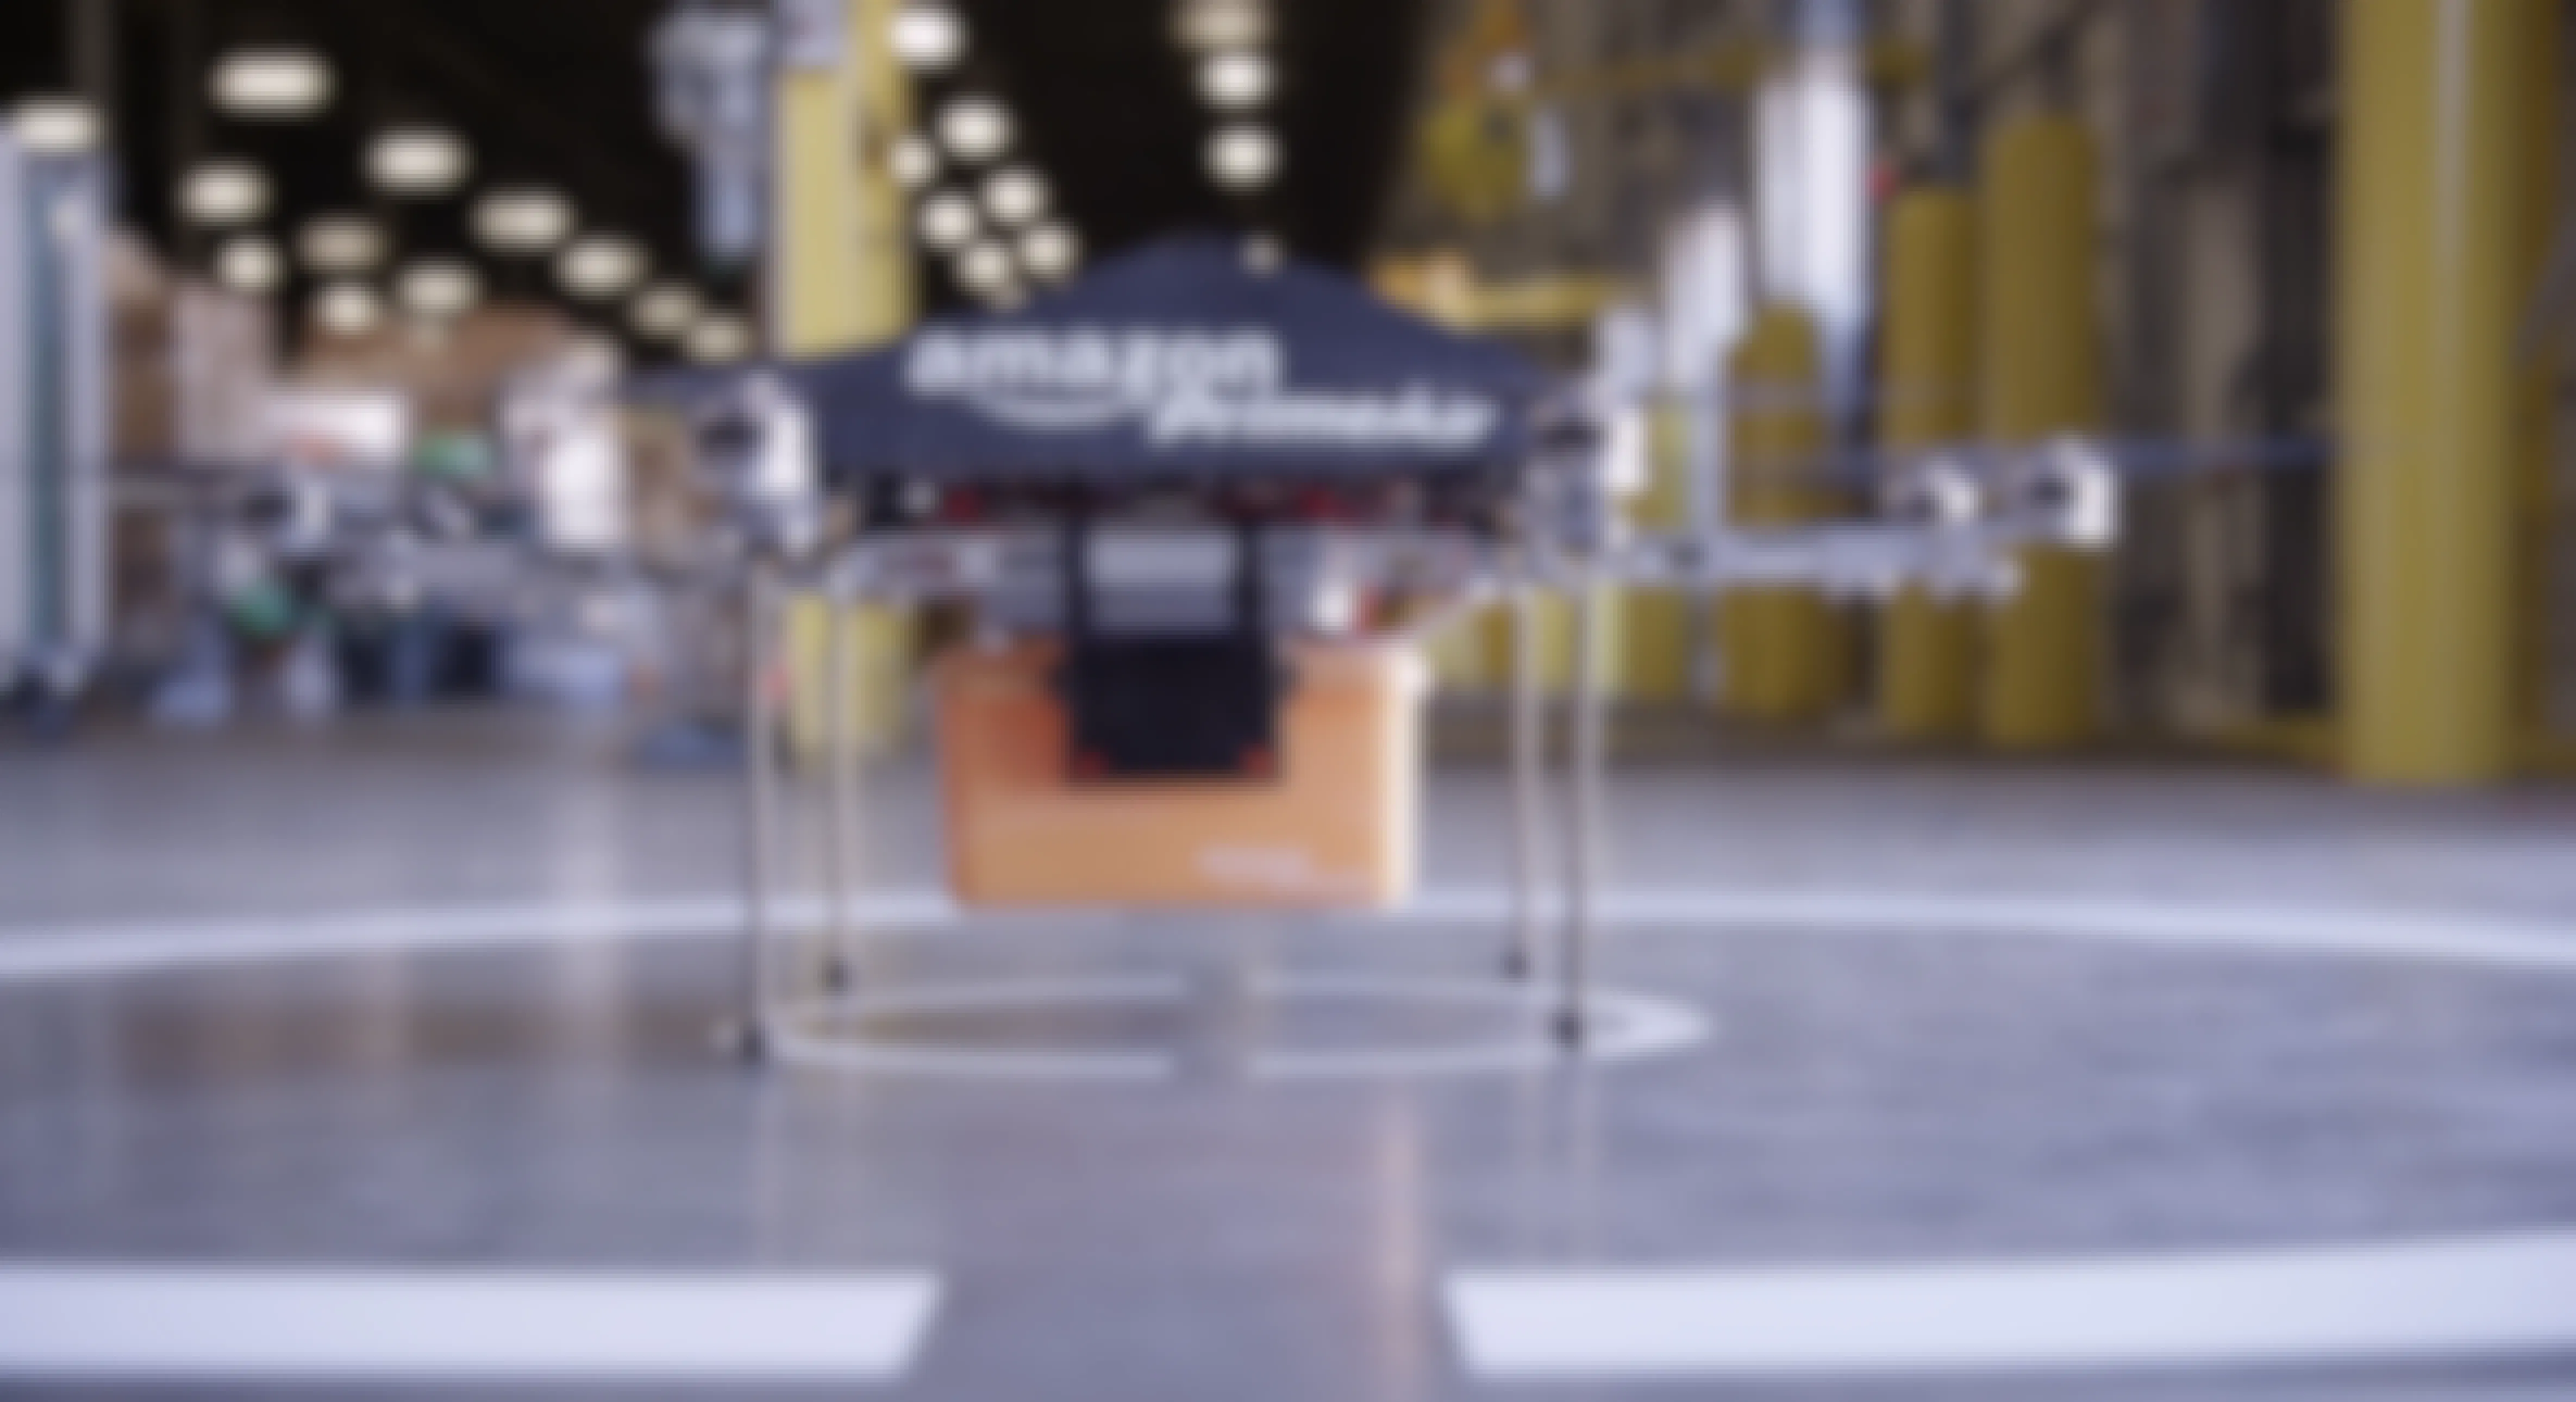 Amazone Prime Air drone 